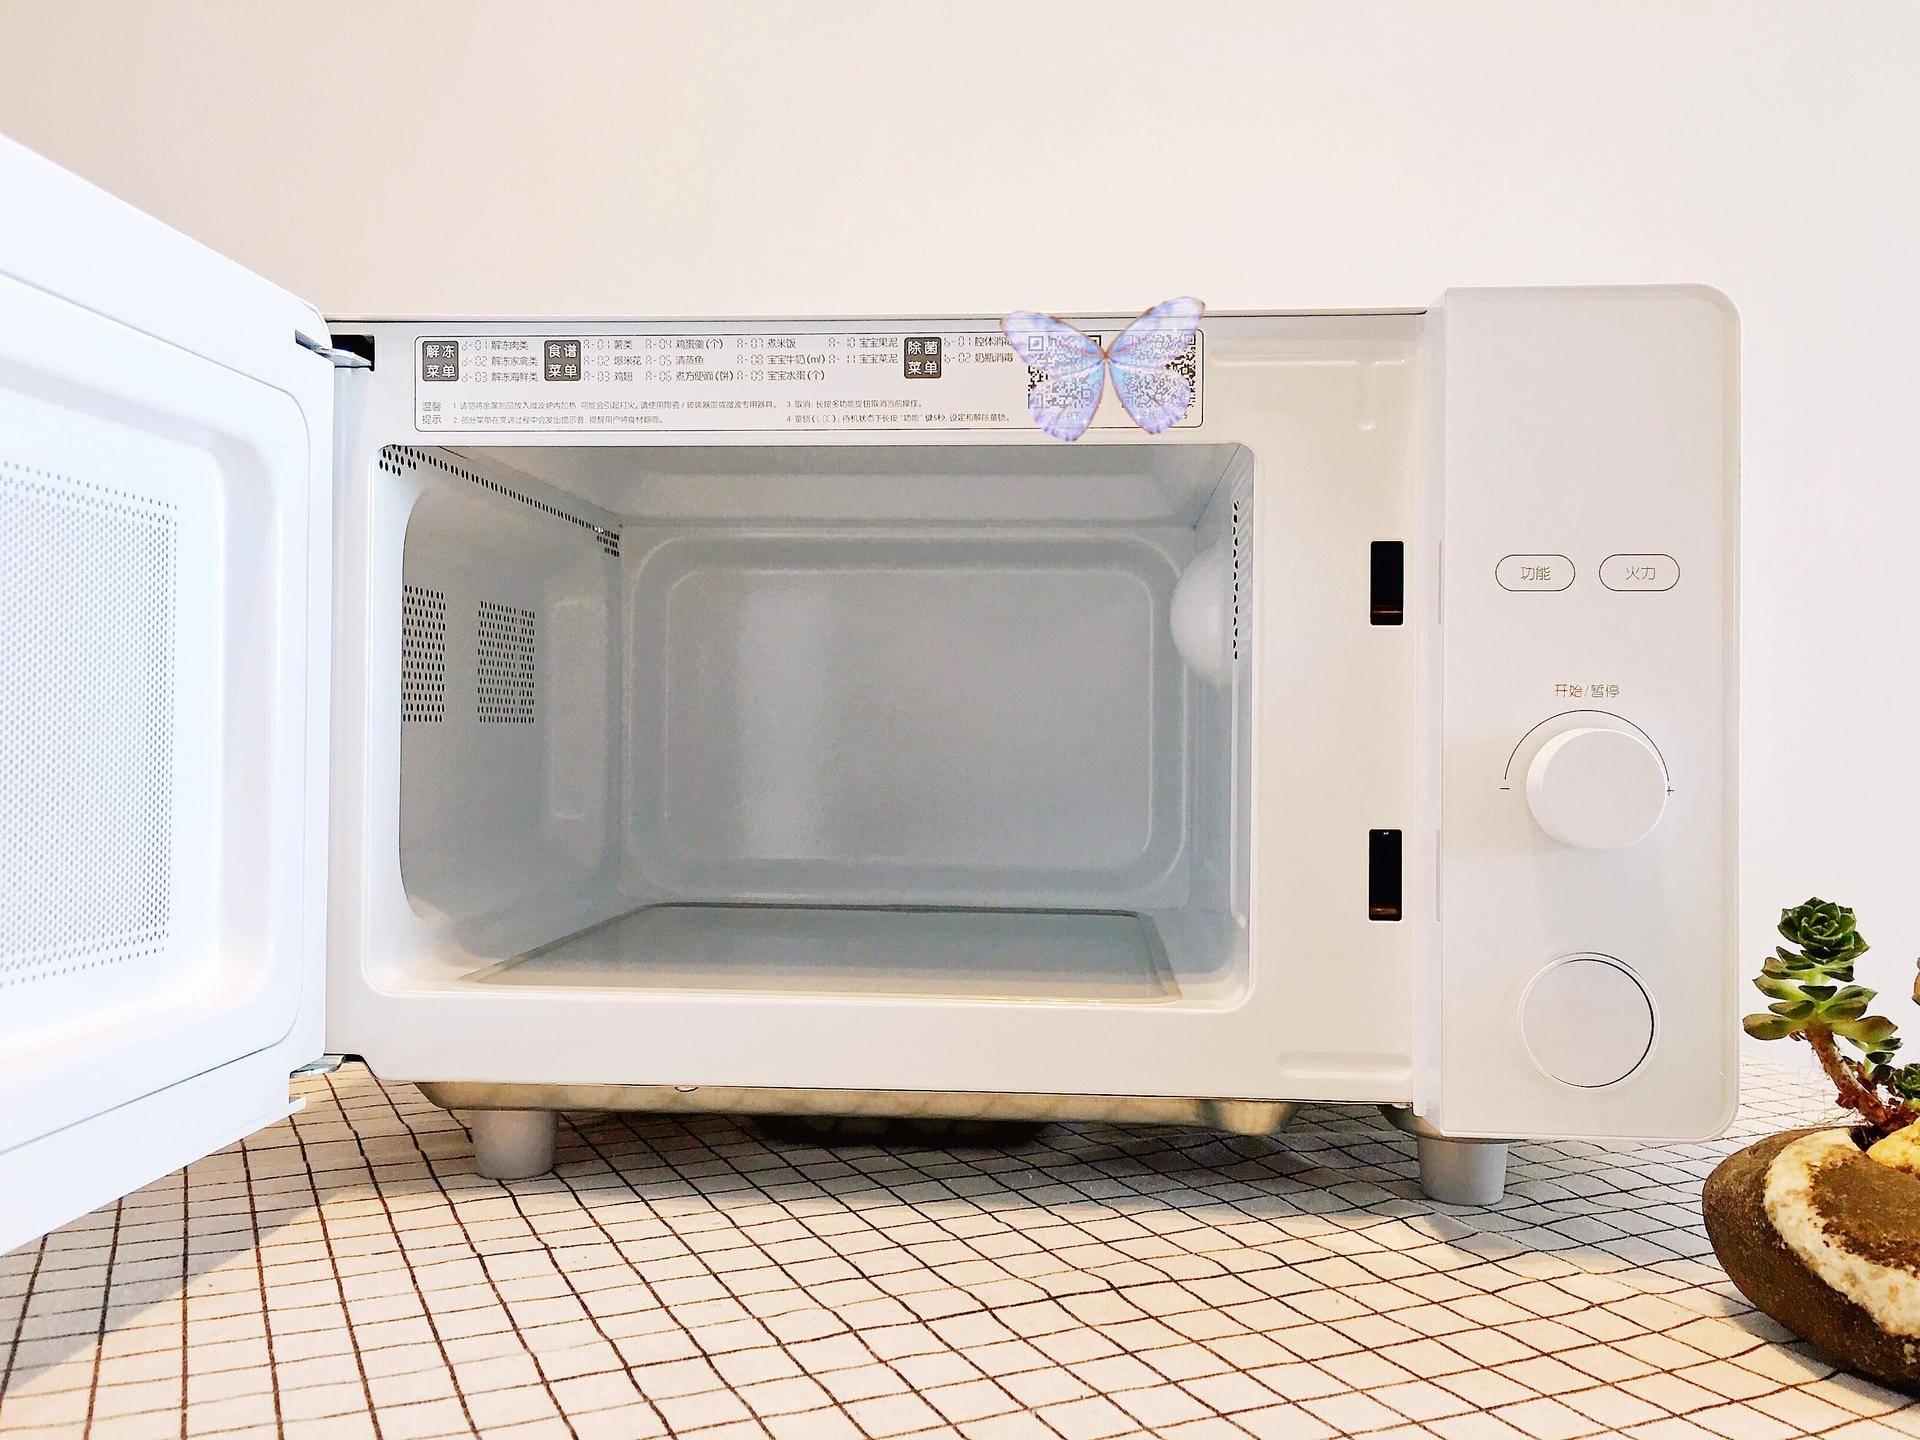 多功能厨房微波炉加热分层蒸架托盘架双层可折叠耐高温环保置物架-阿里巴巴